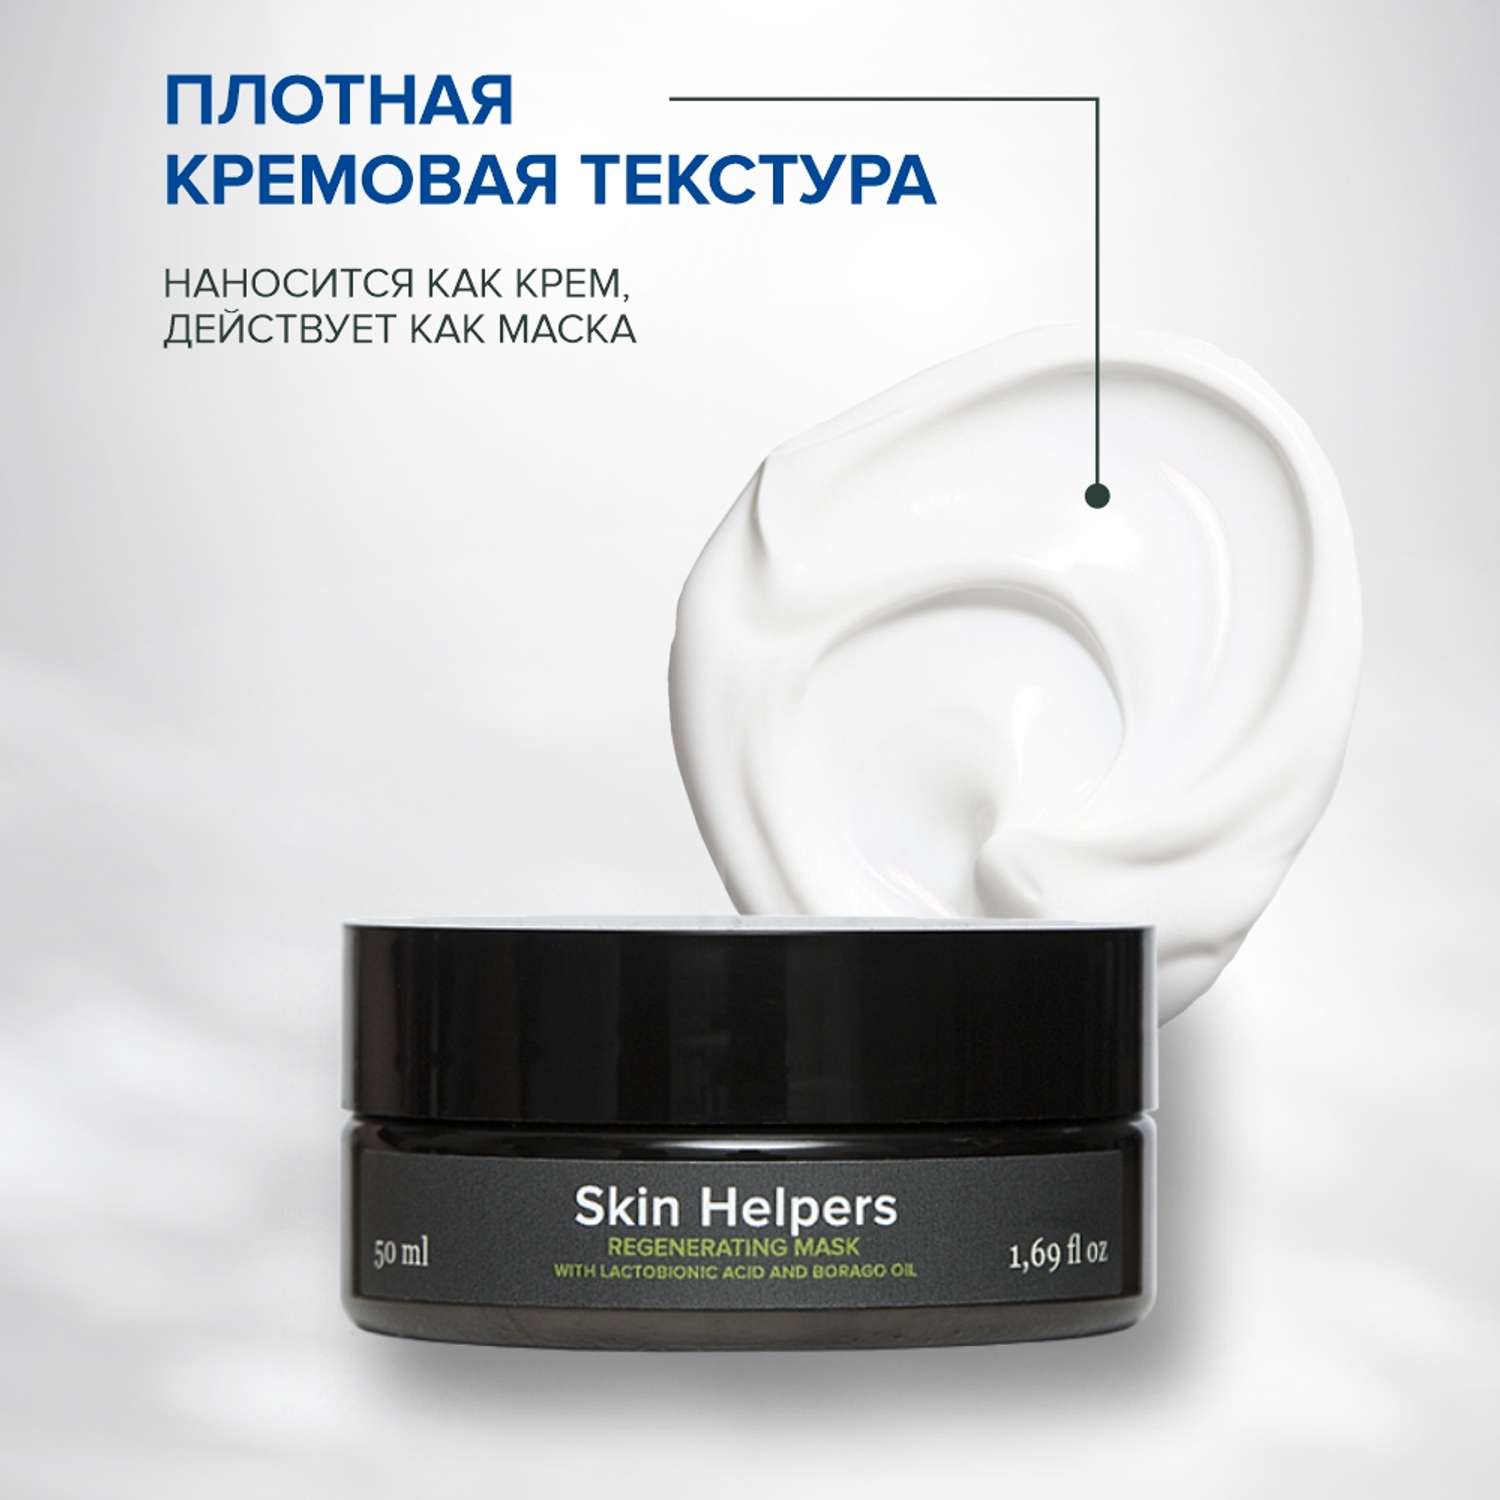 Маска регенерирующая для лица Skin Helpers с лактобионовой кислотой и маслом бораго 50 мл - фото 4